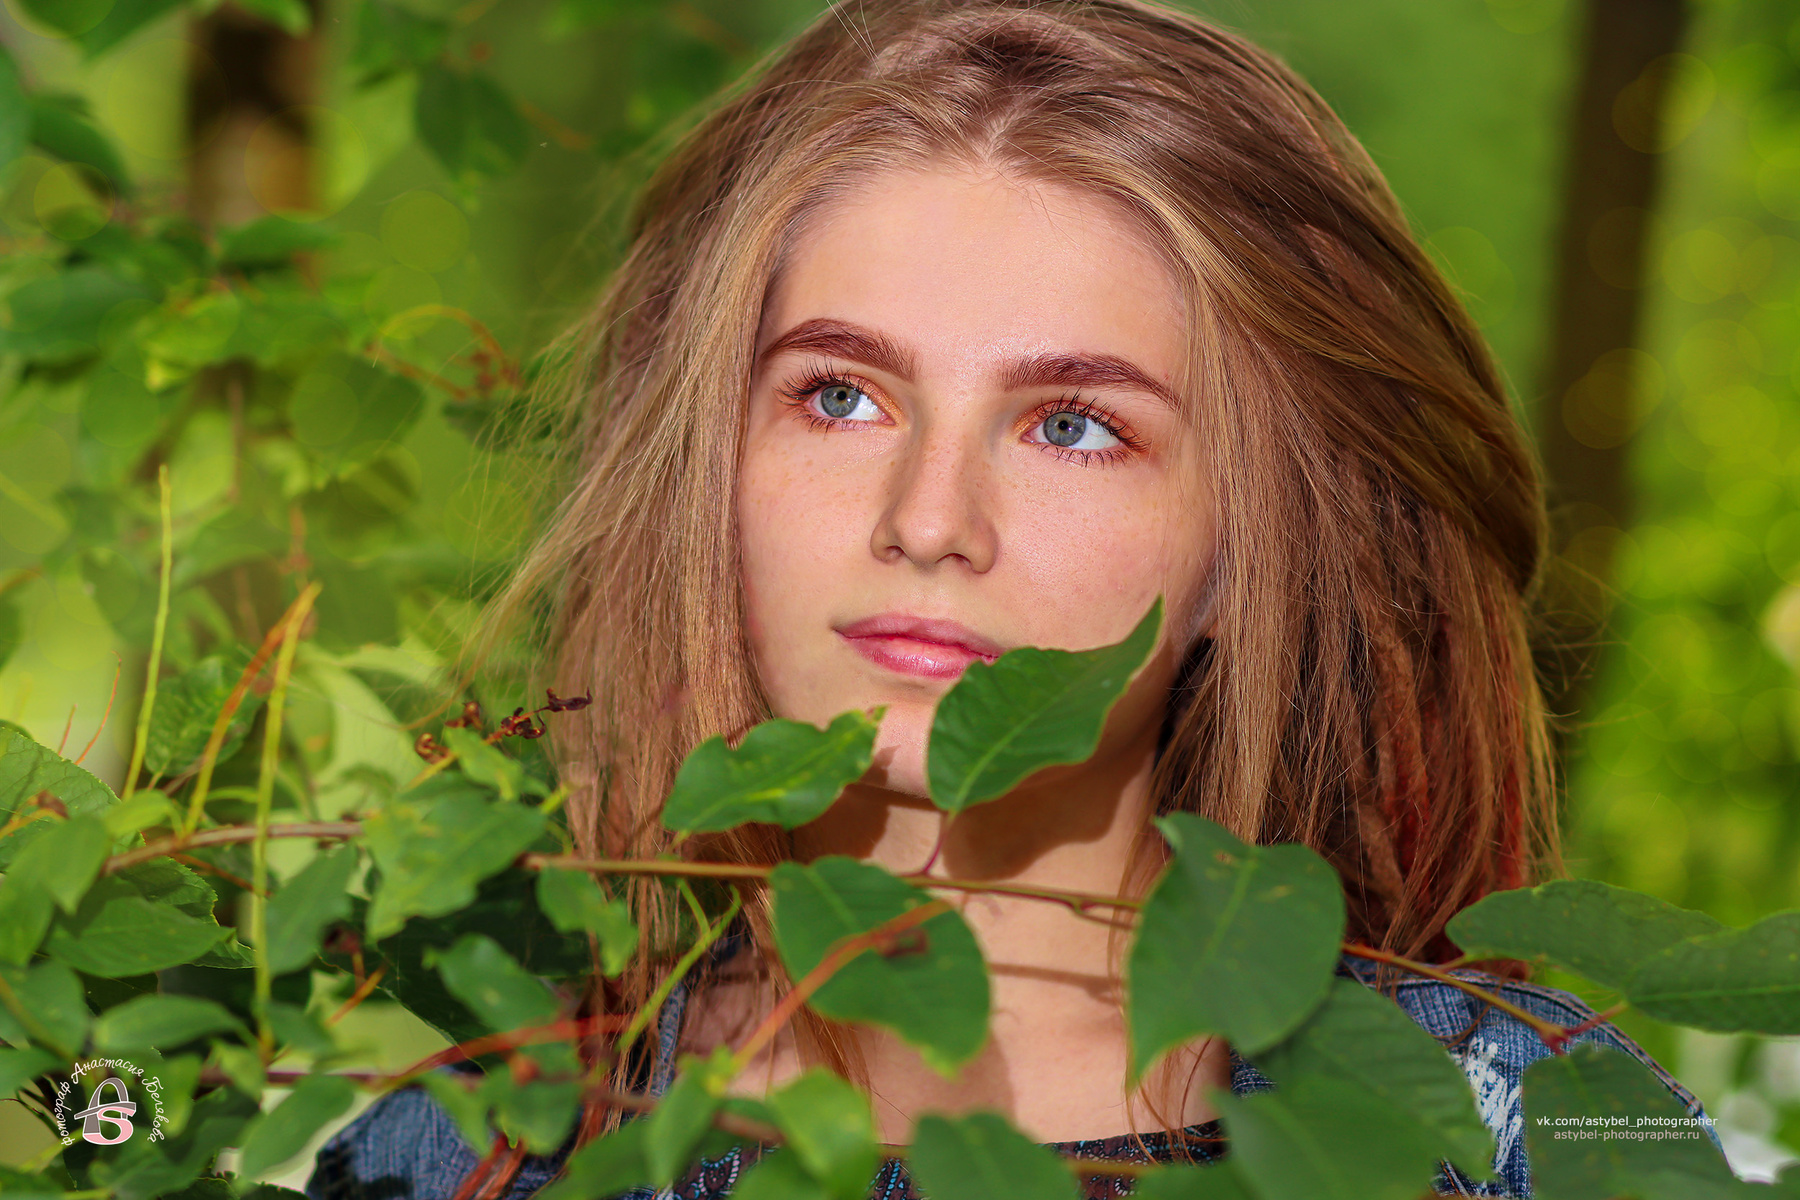 Портрет девушки в листве девушка дреды красотка зелень лето парк портрет листва куст красавица модель